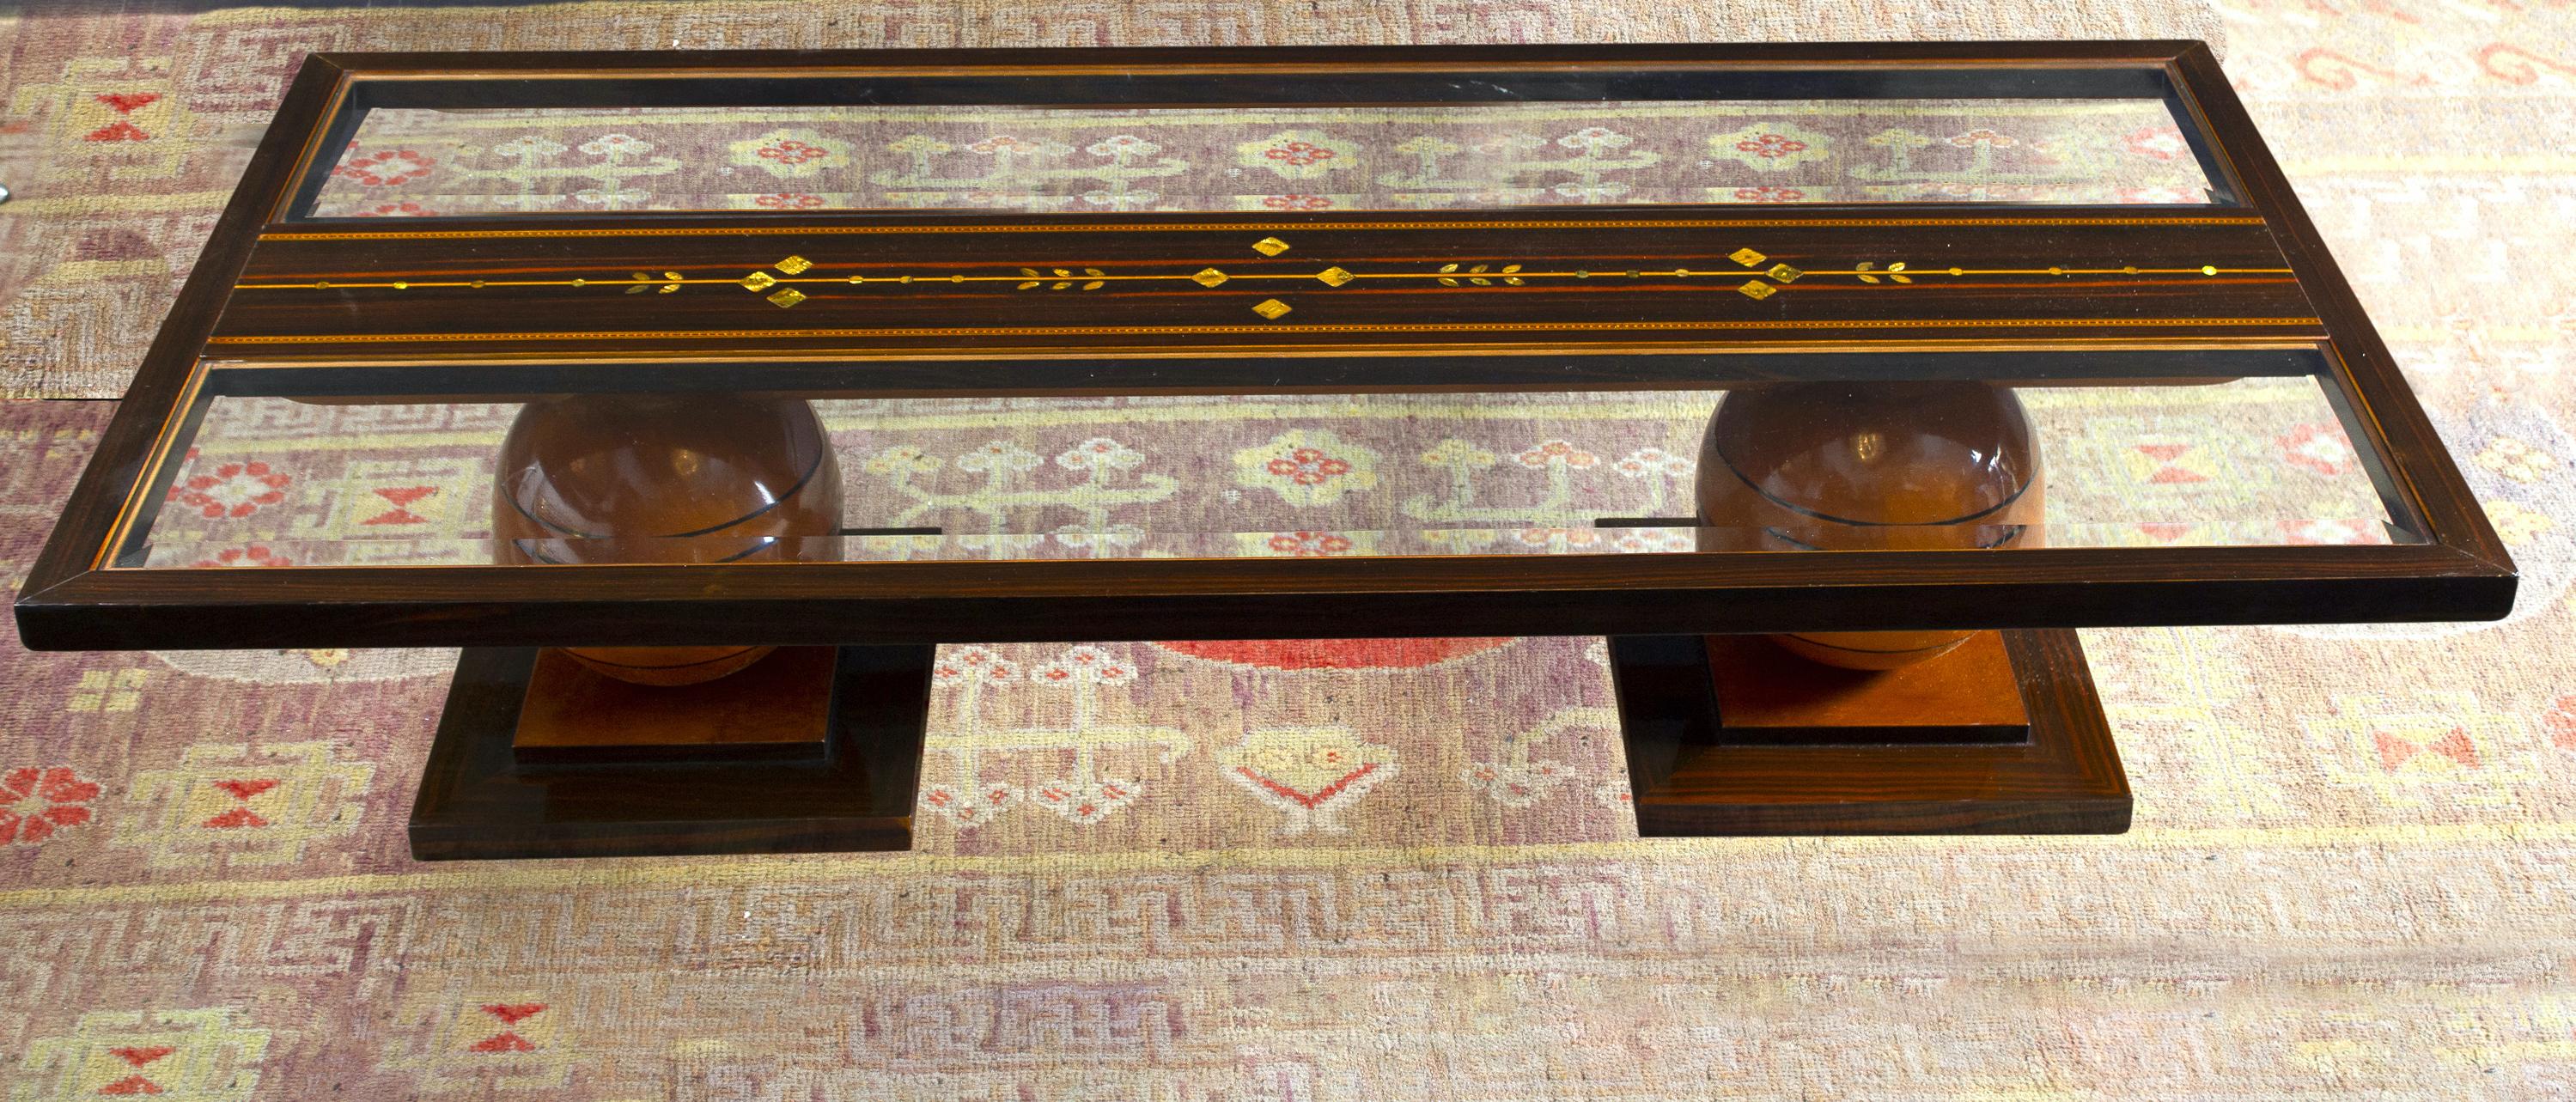 Eleganter Art Deco Couchtisch in verschiedenen Holzarten, verziert mit kostbaren Perlmutt-Einsätzen.
Die Basis unterzeichnet C. 
 Ausgezeichneter Vintage-Zustand
 